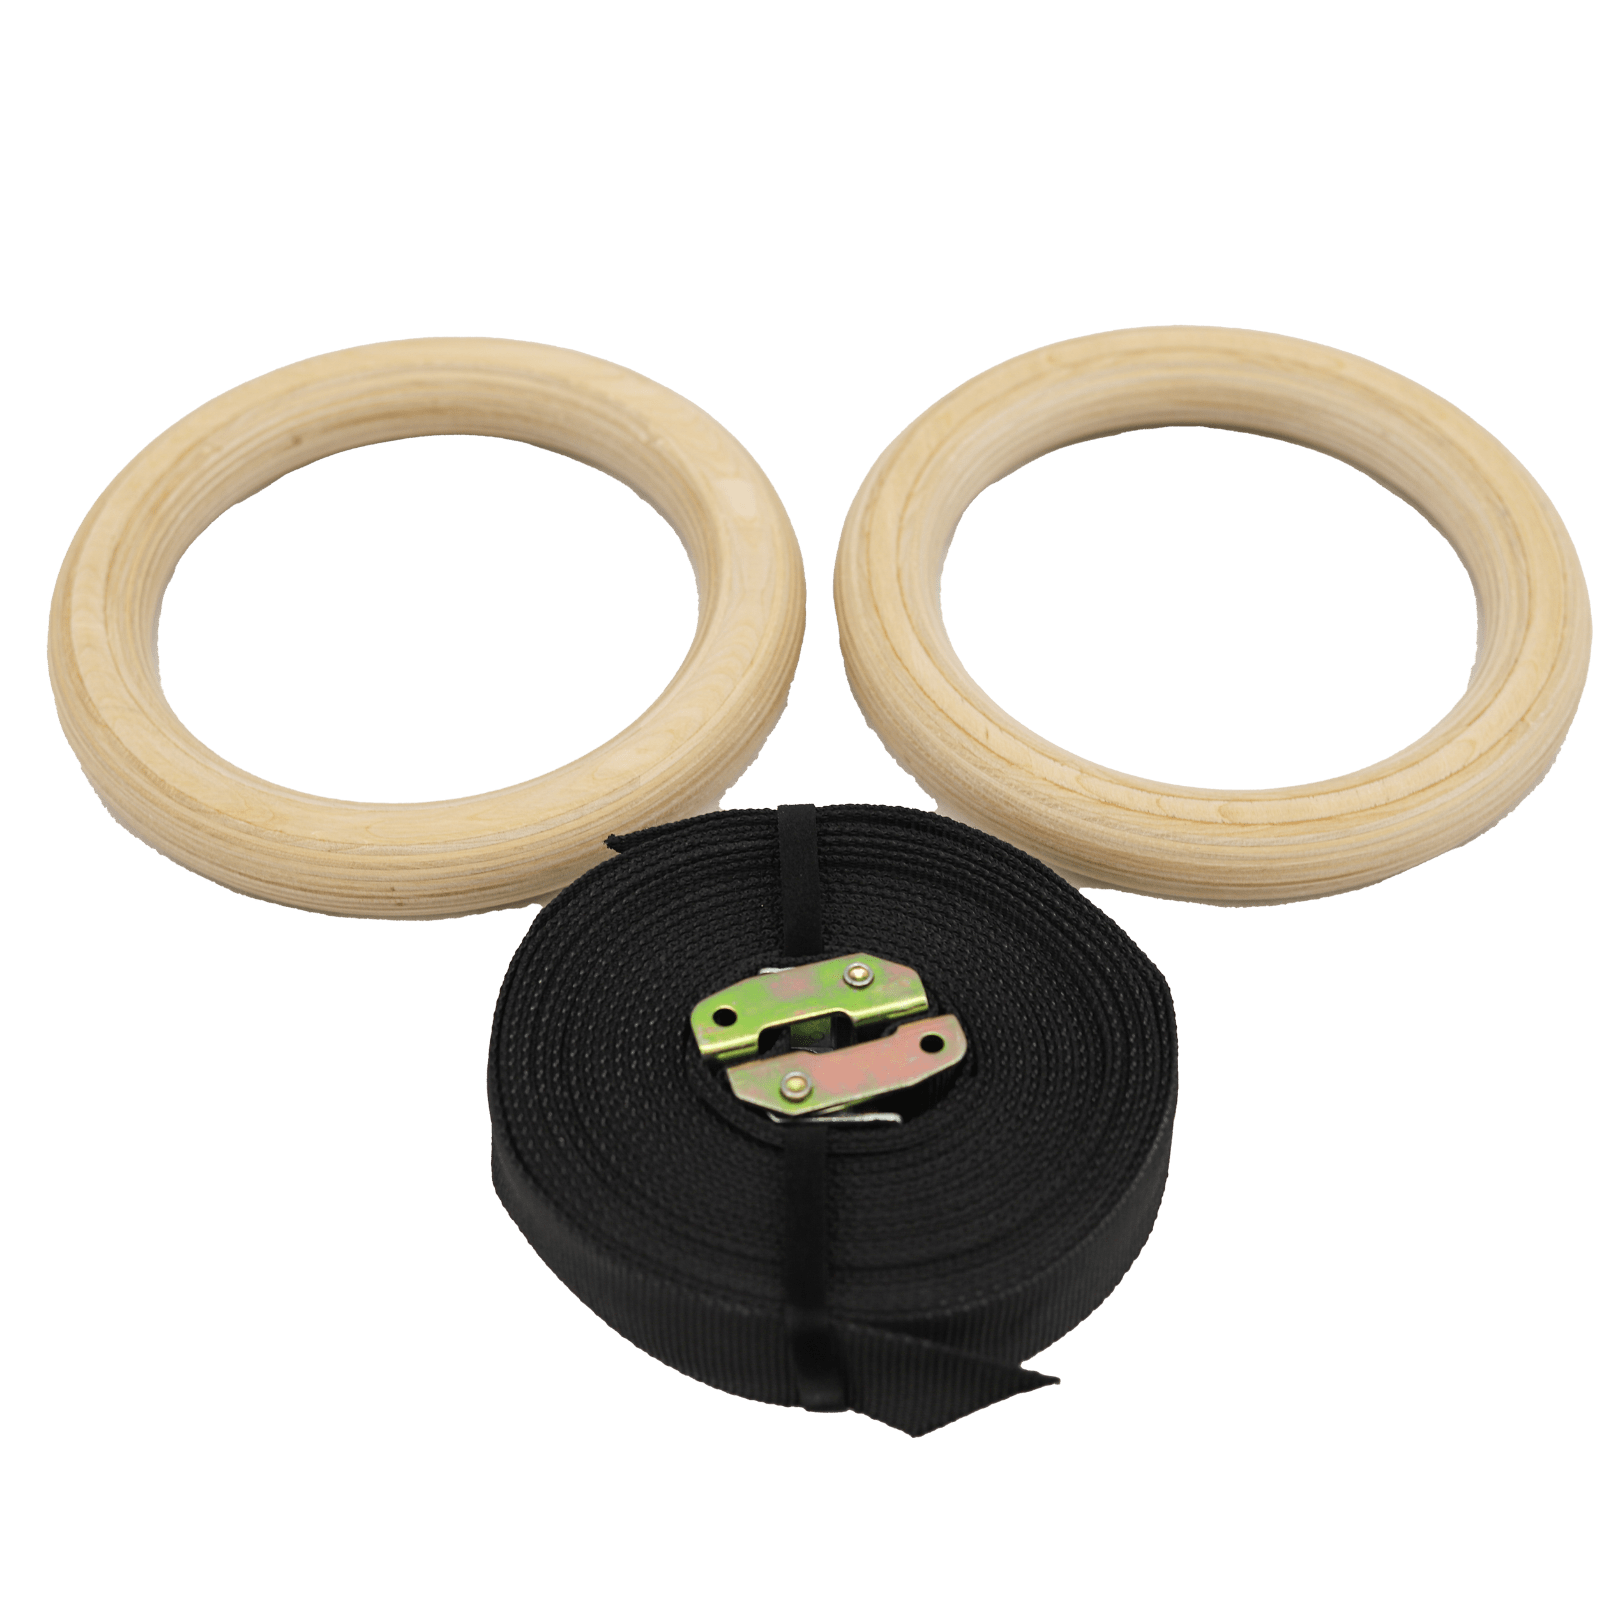 Gymnastic Premium Wooden Rings (880lbs) – Joyfit